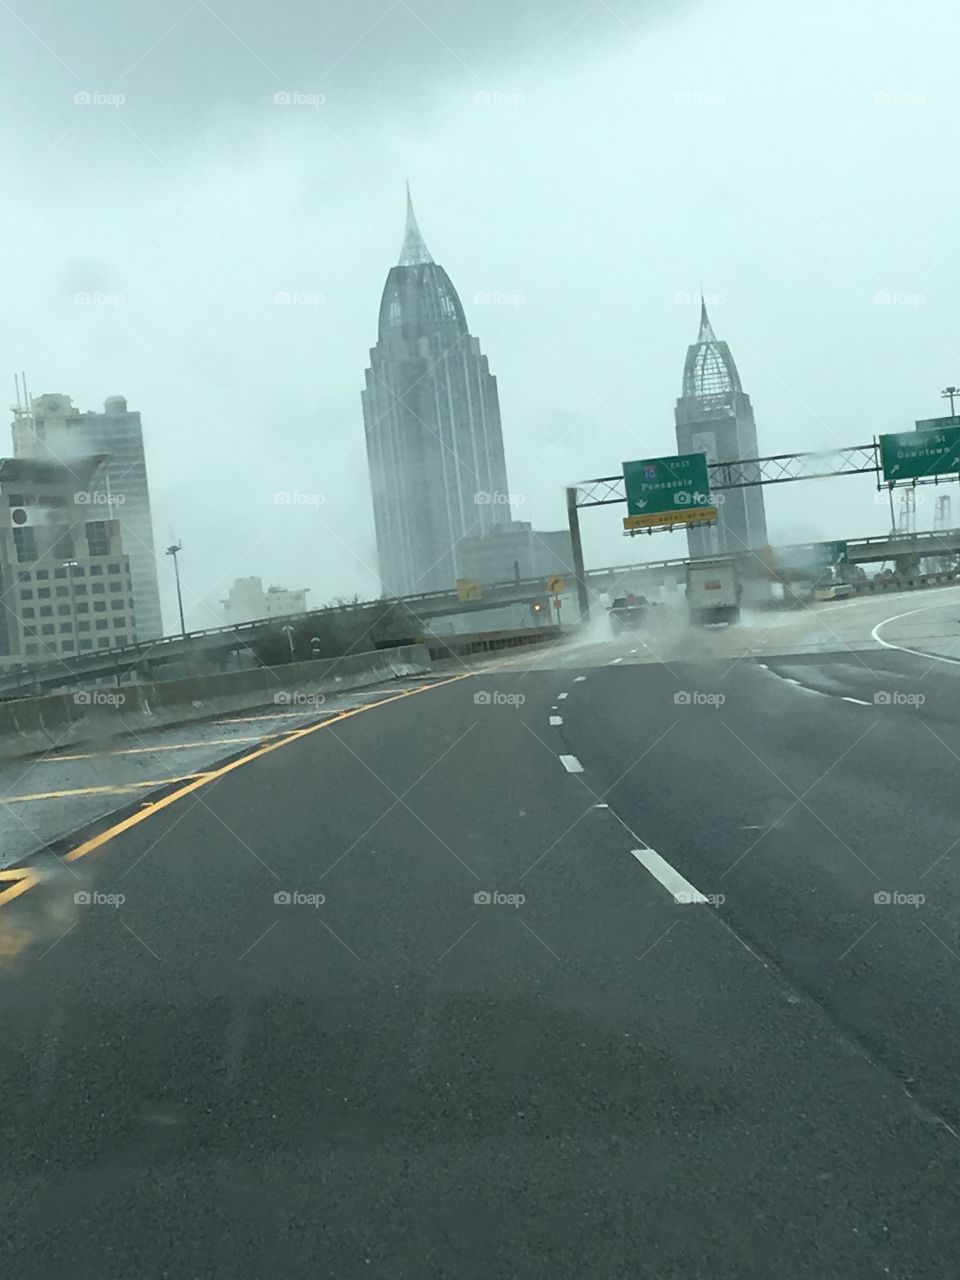 Driving in the rain. Mobile, Al